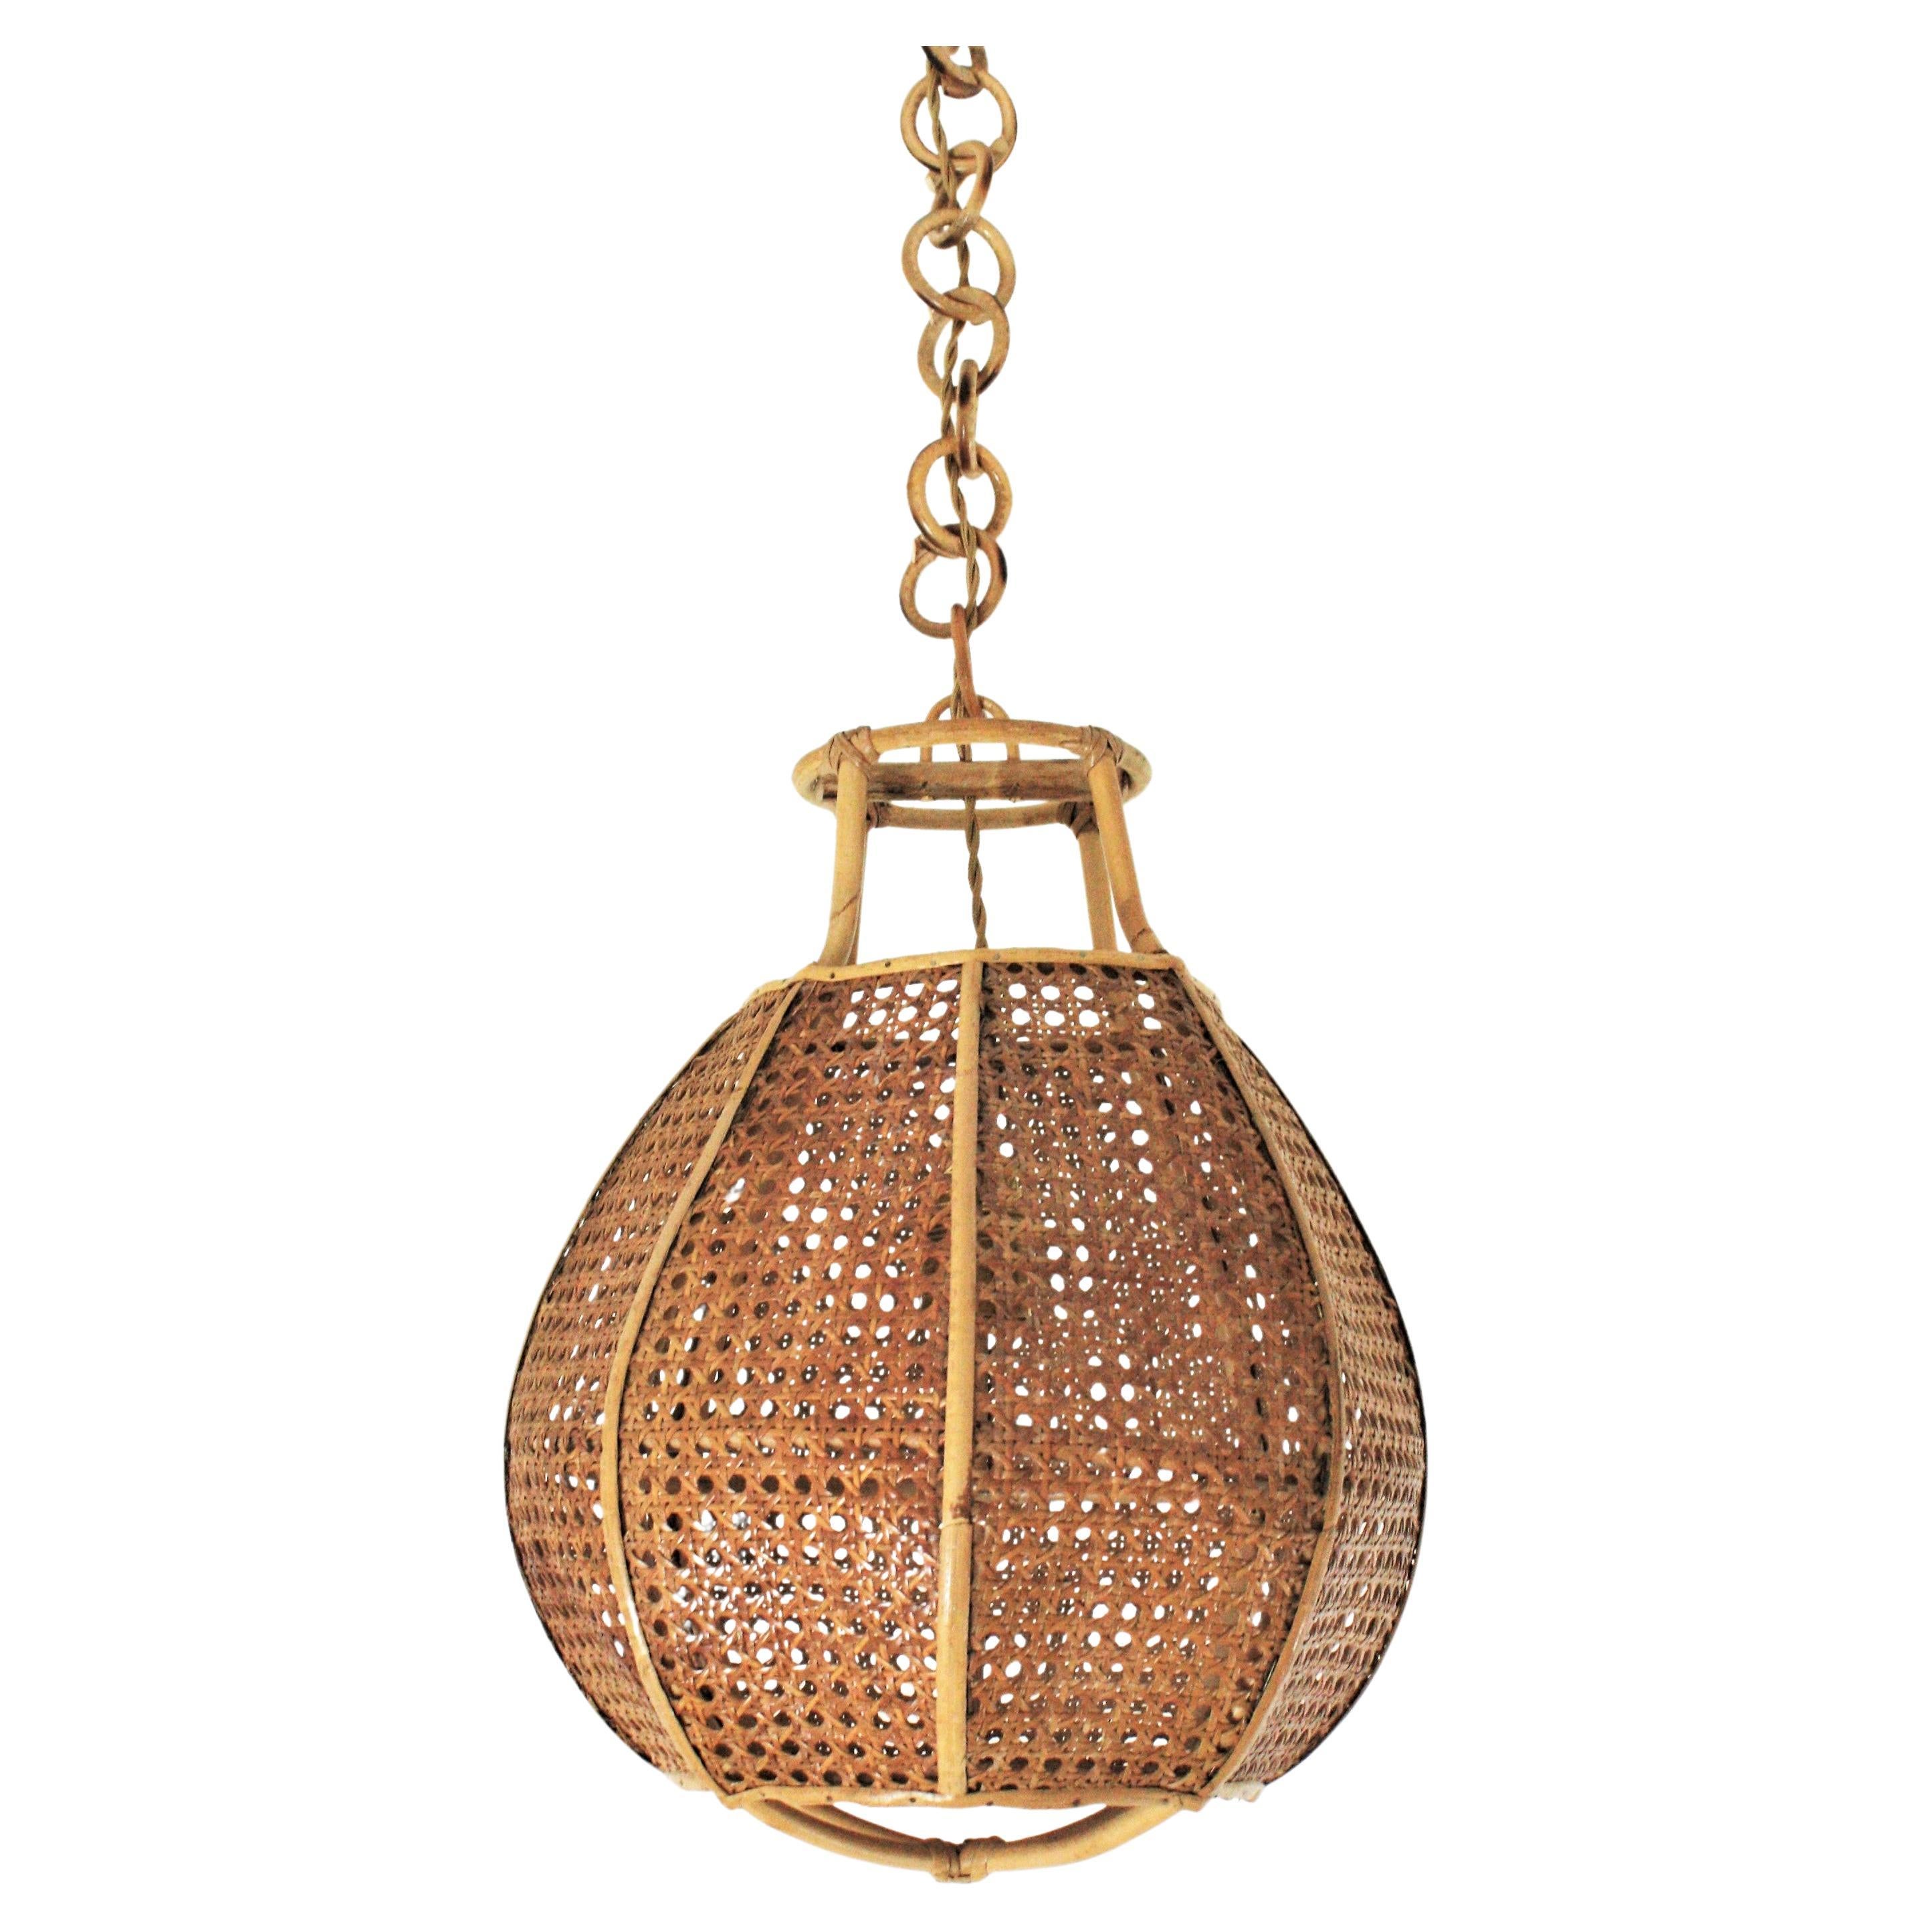 Suspension Globe Lighting moderniste italienne en osier, fil de fer et rotin